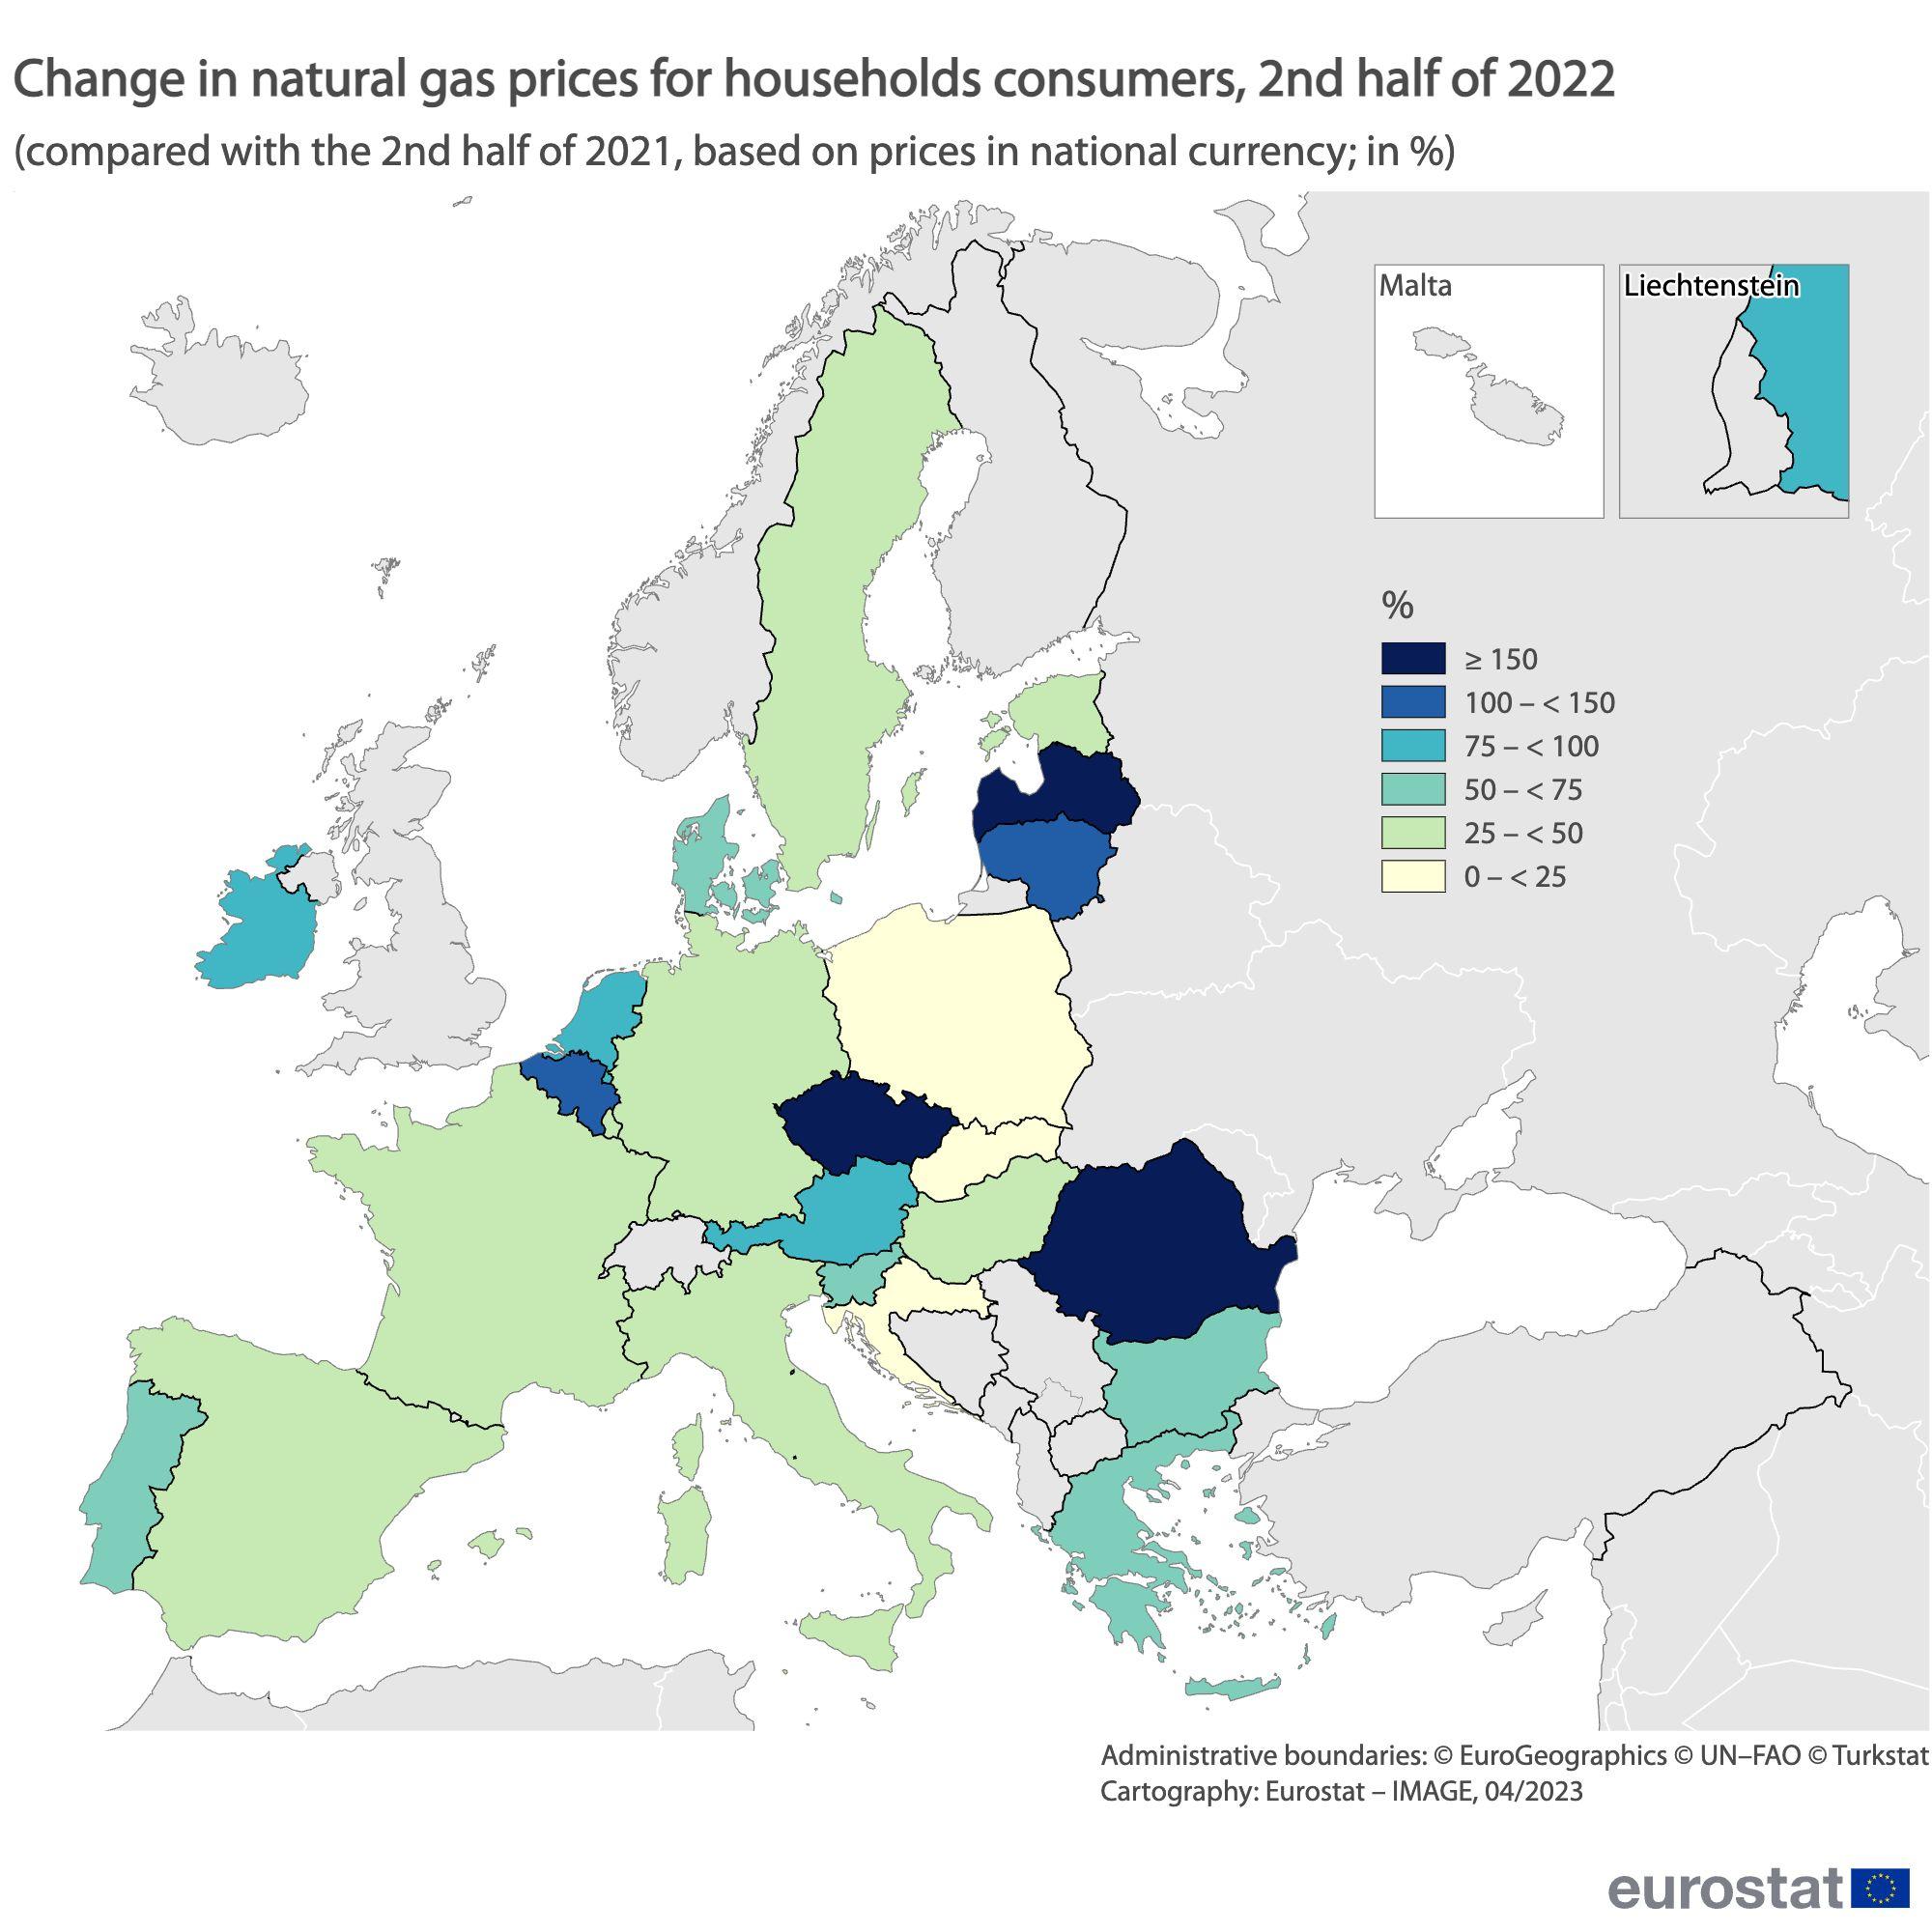 România a avut cea mai are creştere din UE la preţul energiei electrice şi a fost pe 2 la gaze, anul trecut - Eurostat